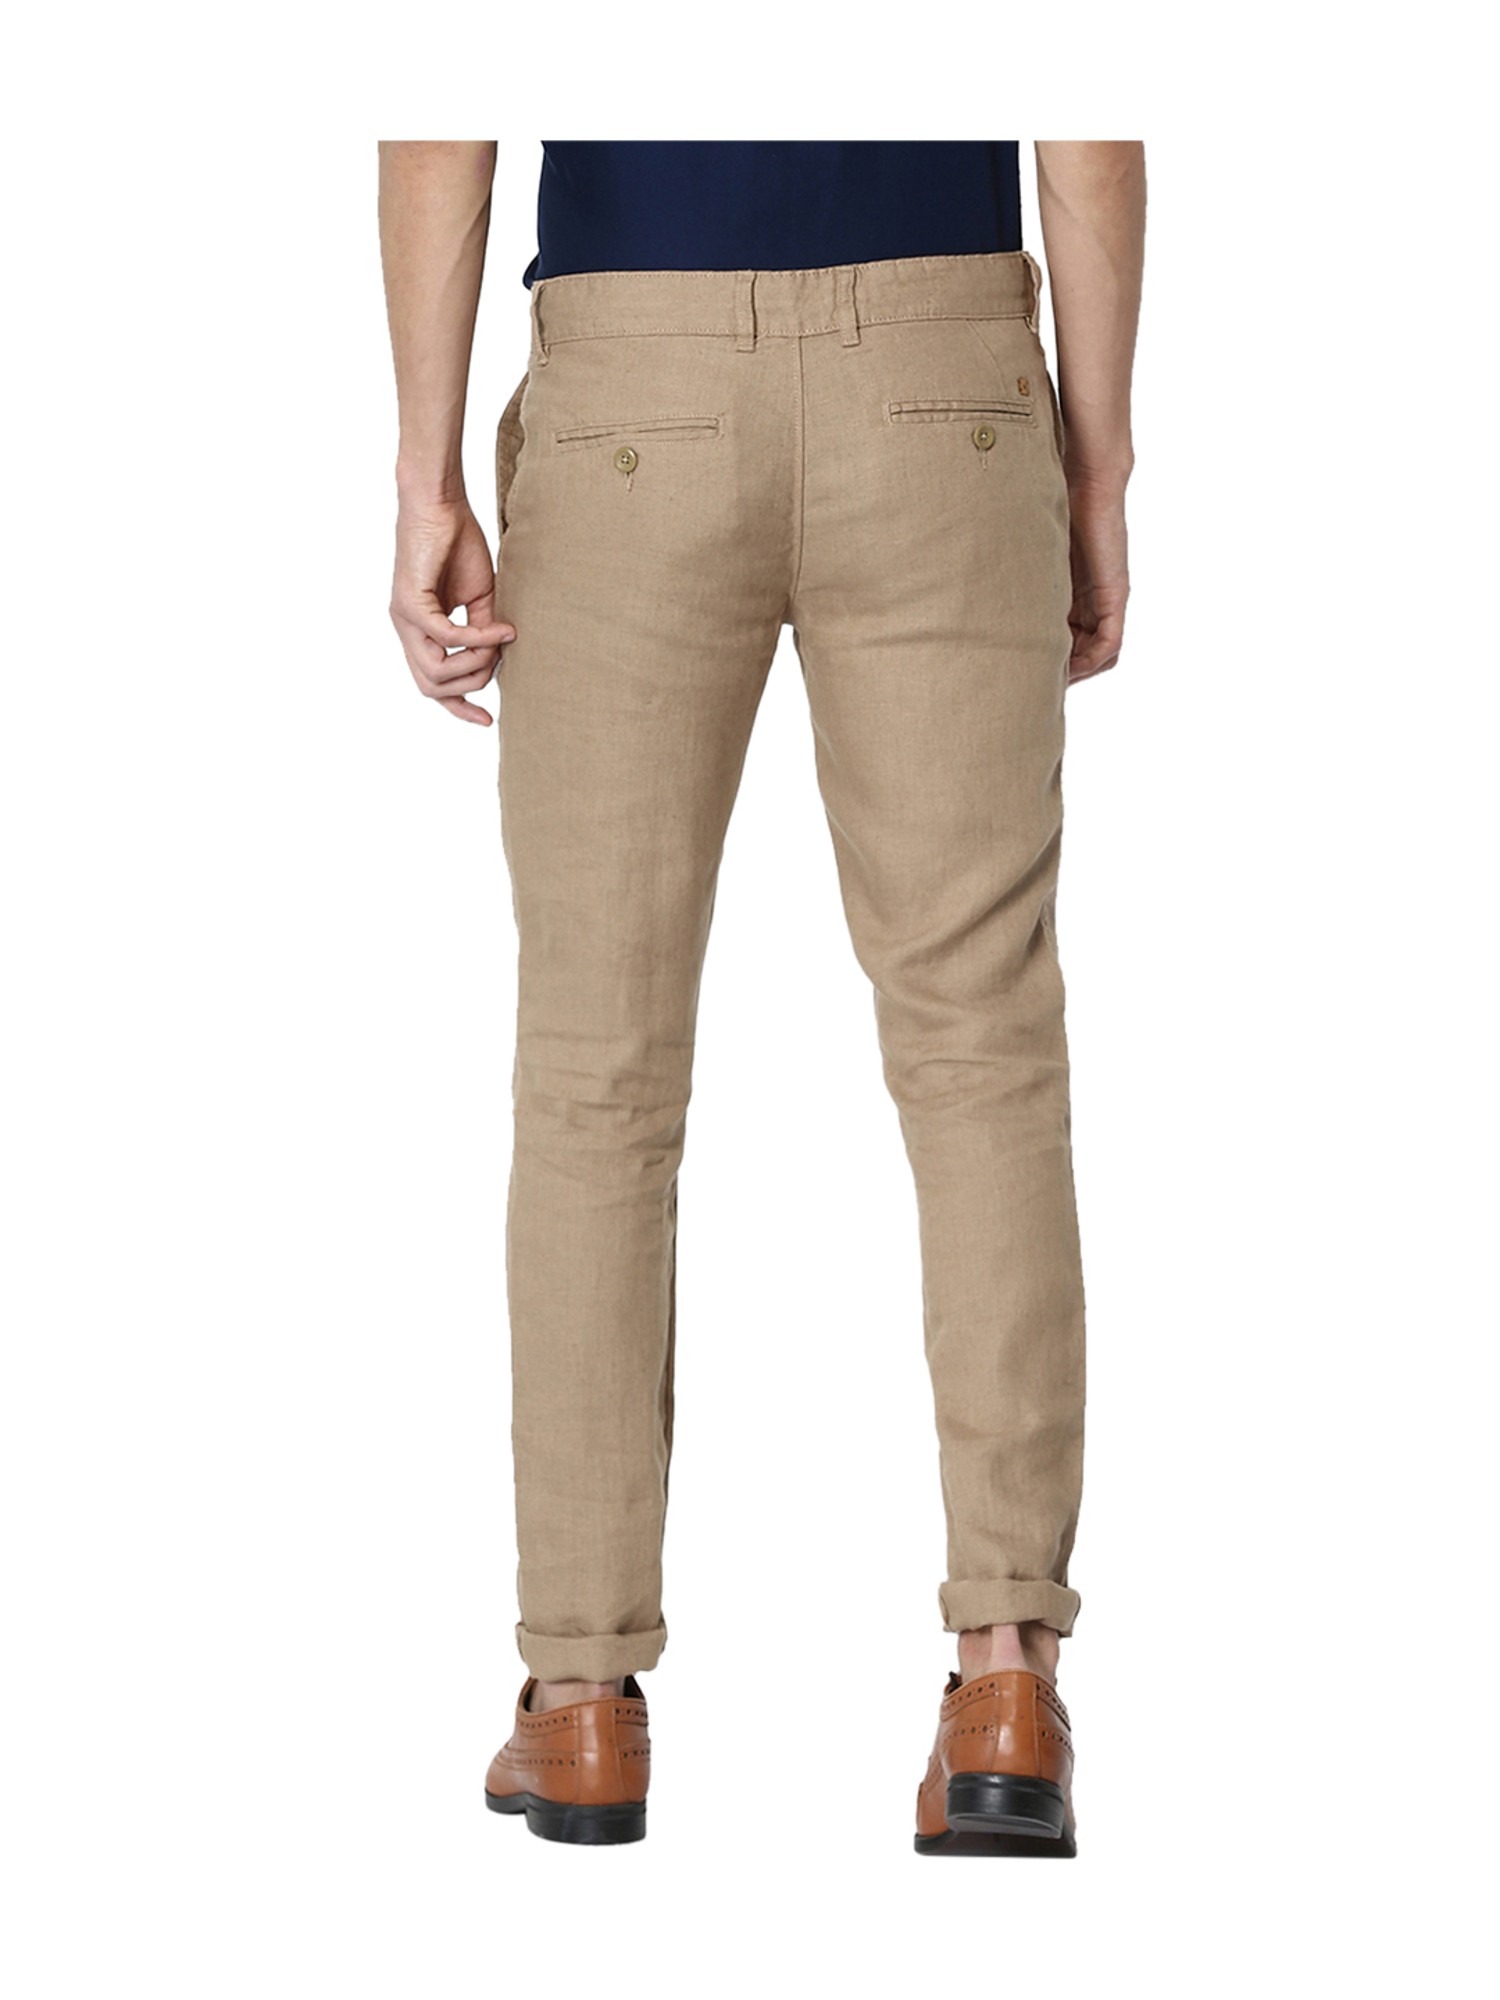 Celio Slim Fit Men Grey Trousers  Buy GREY Celio Slim Fit Men Grey Trousers  Online at Best Prices in India  Flipkartcom